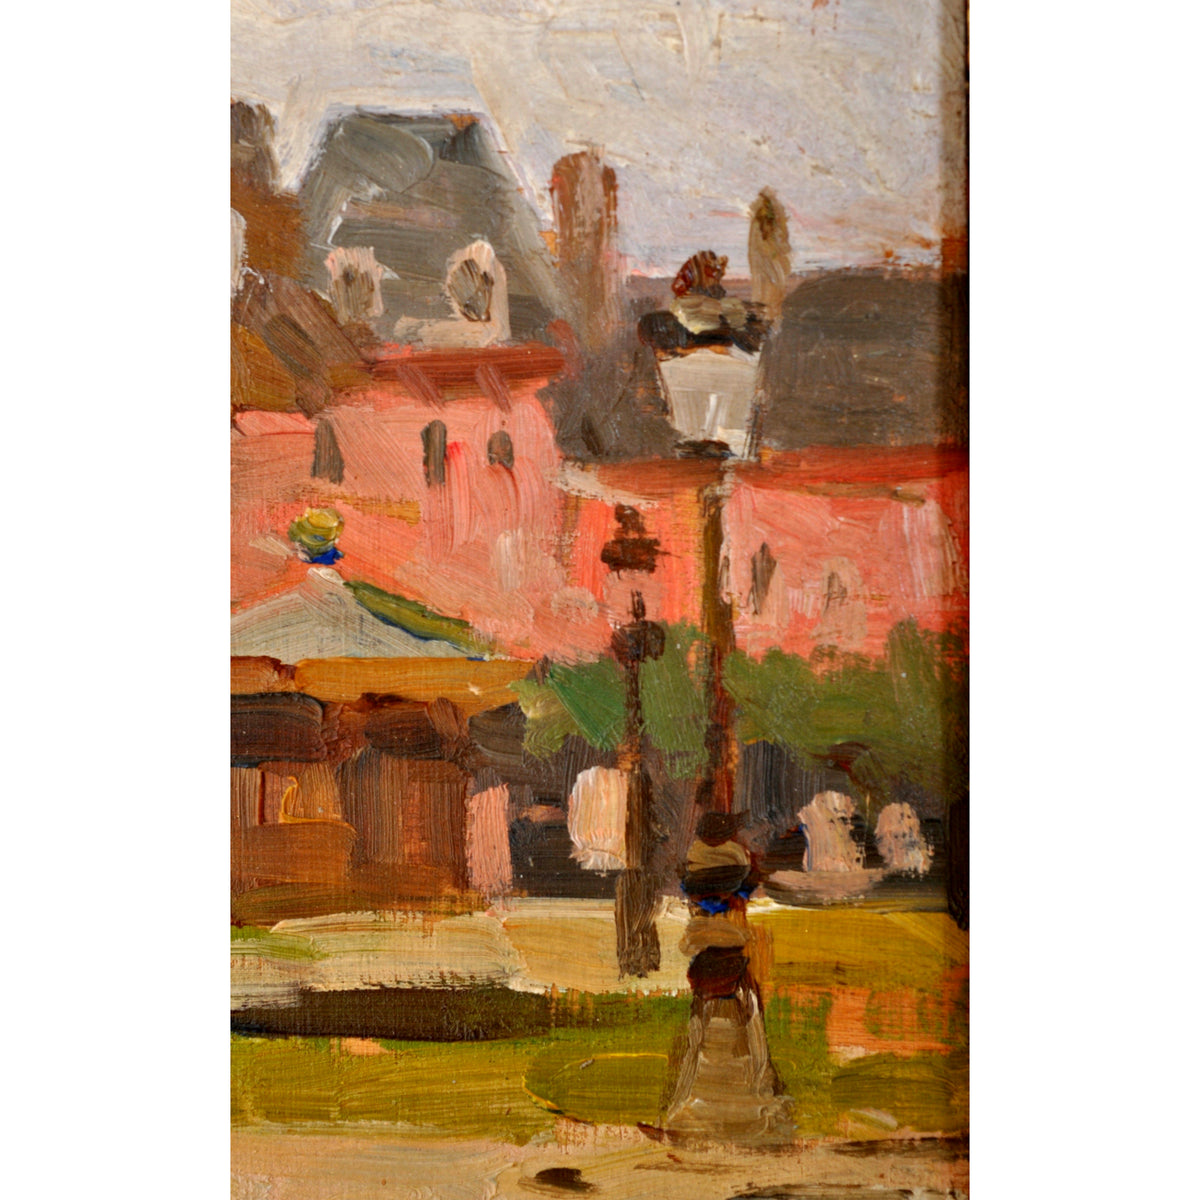 Antique French Impressionist Oil Painting "Place des Vosges", Paris, Paul de Frick 1908